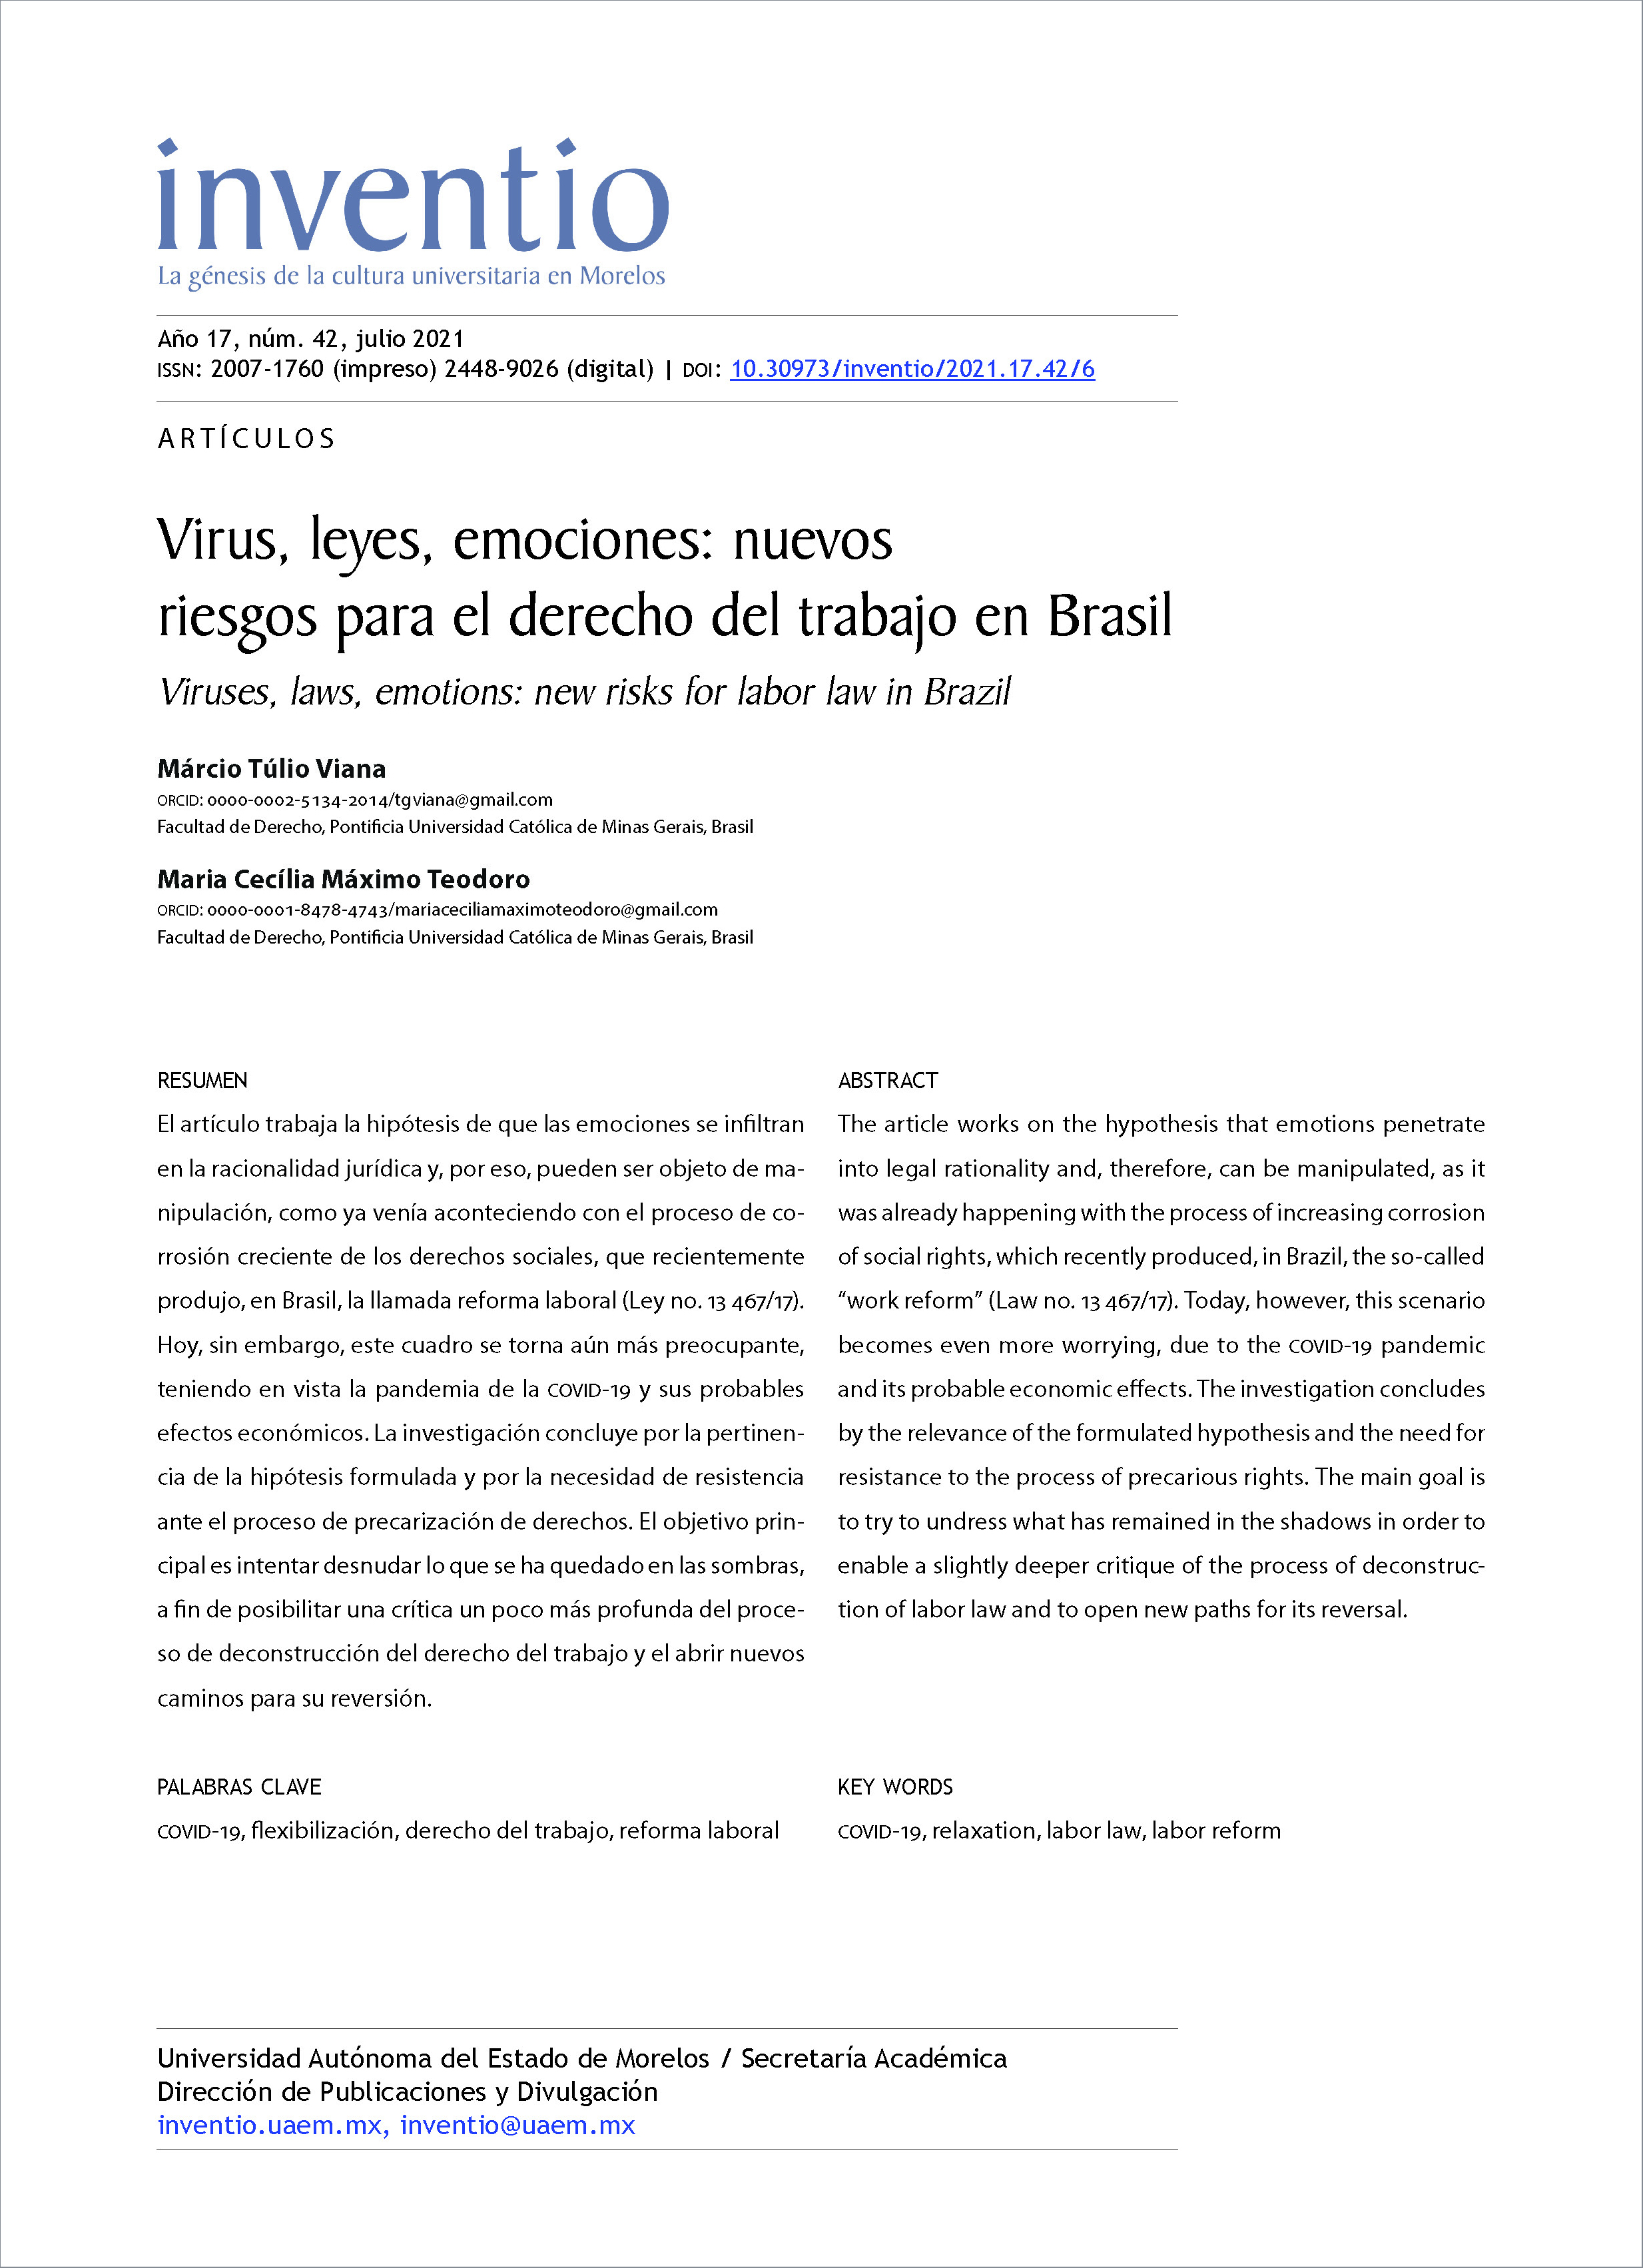  Virus, leyes, emociones: nuevos riesgos para el derecho del trabajo en Brasil